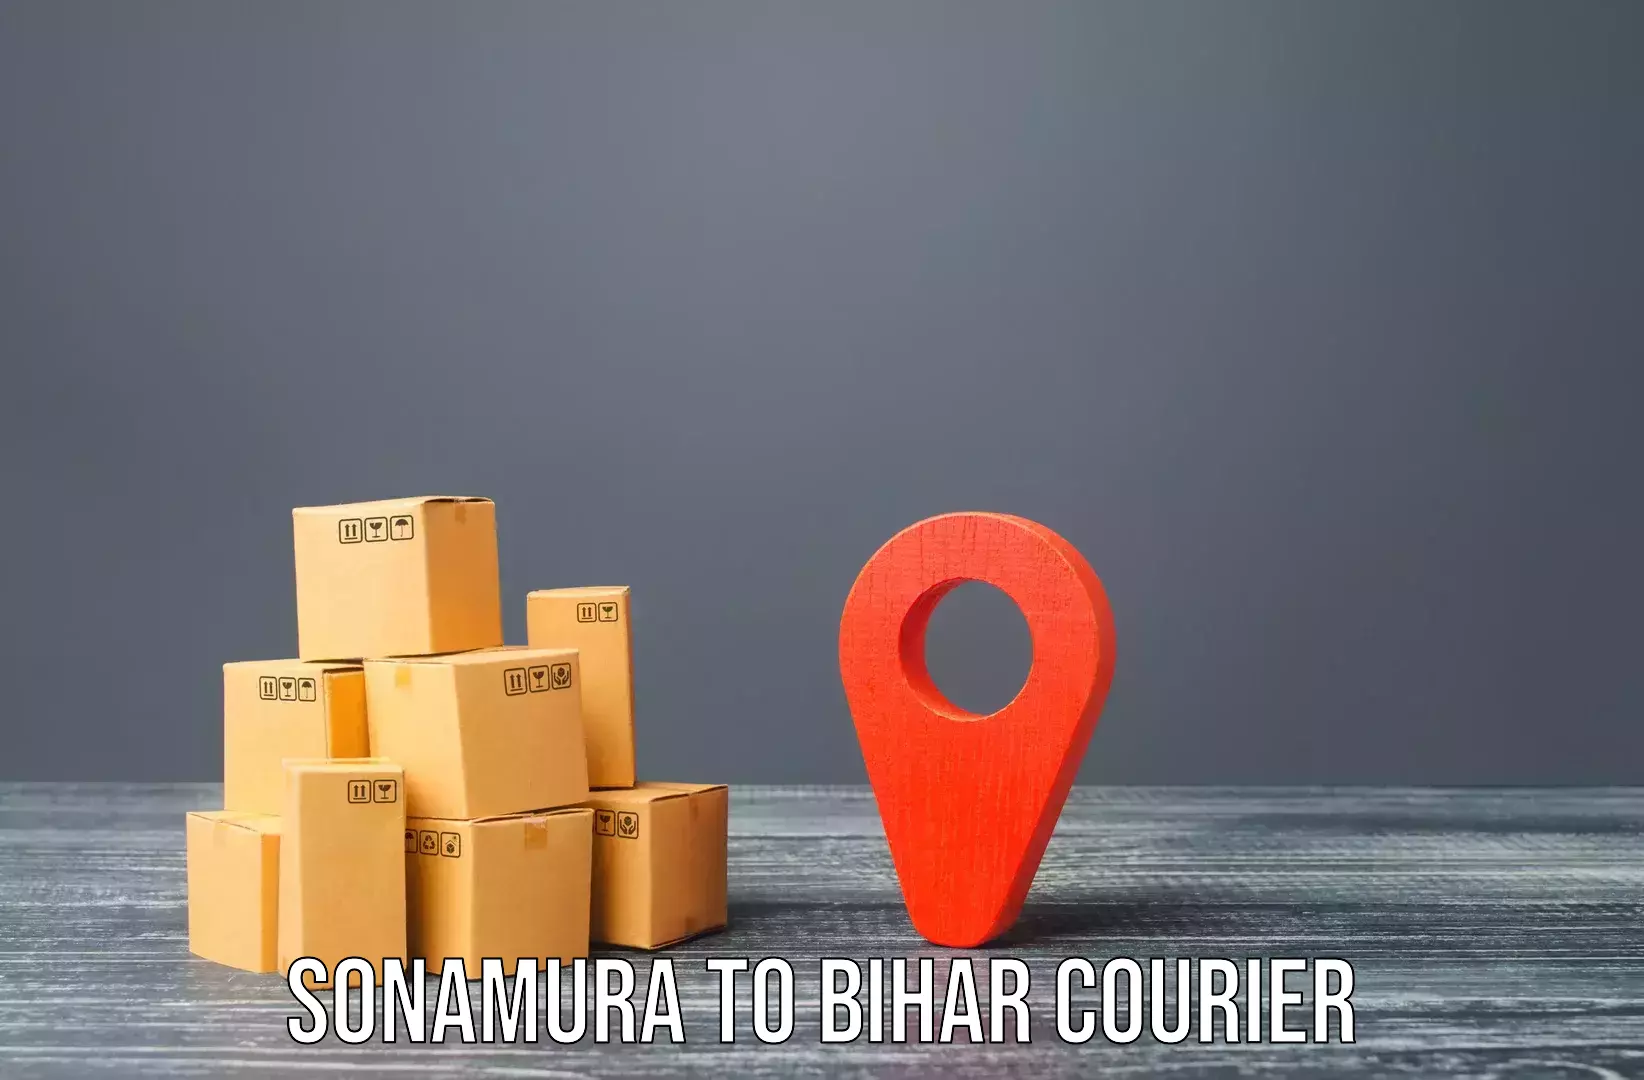 Expert furniture movers Sonamura to Dhaka